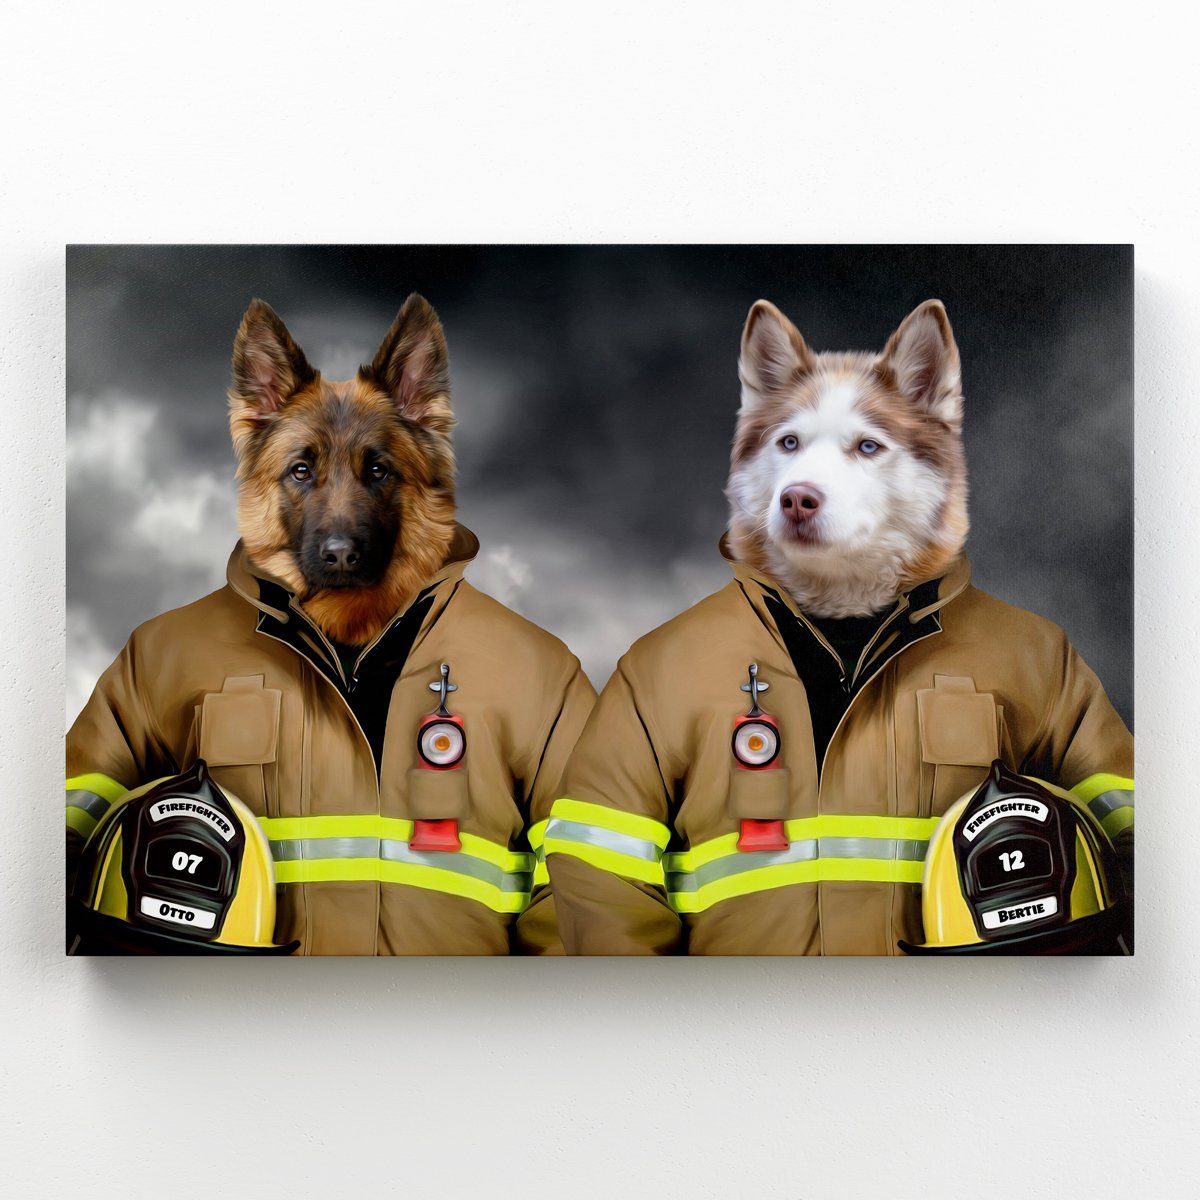 The Firemen: Custom Pet Canvas - Paw & Glory - #pet portraits# - #dog portraits# - #pet portraits uk#paw & glory, pet portraits canvas,dog photo on canvas, dog canvas painting, the pet canvas, dog canvas wall art, dog portrait canvas